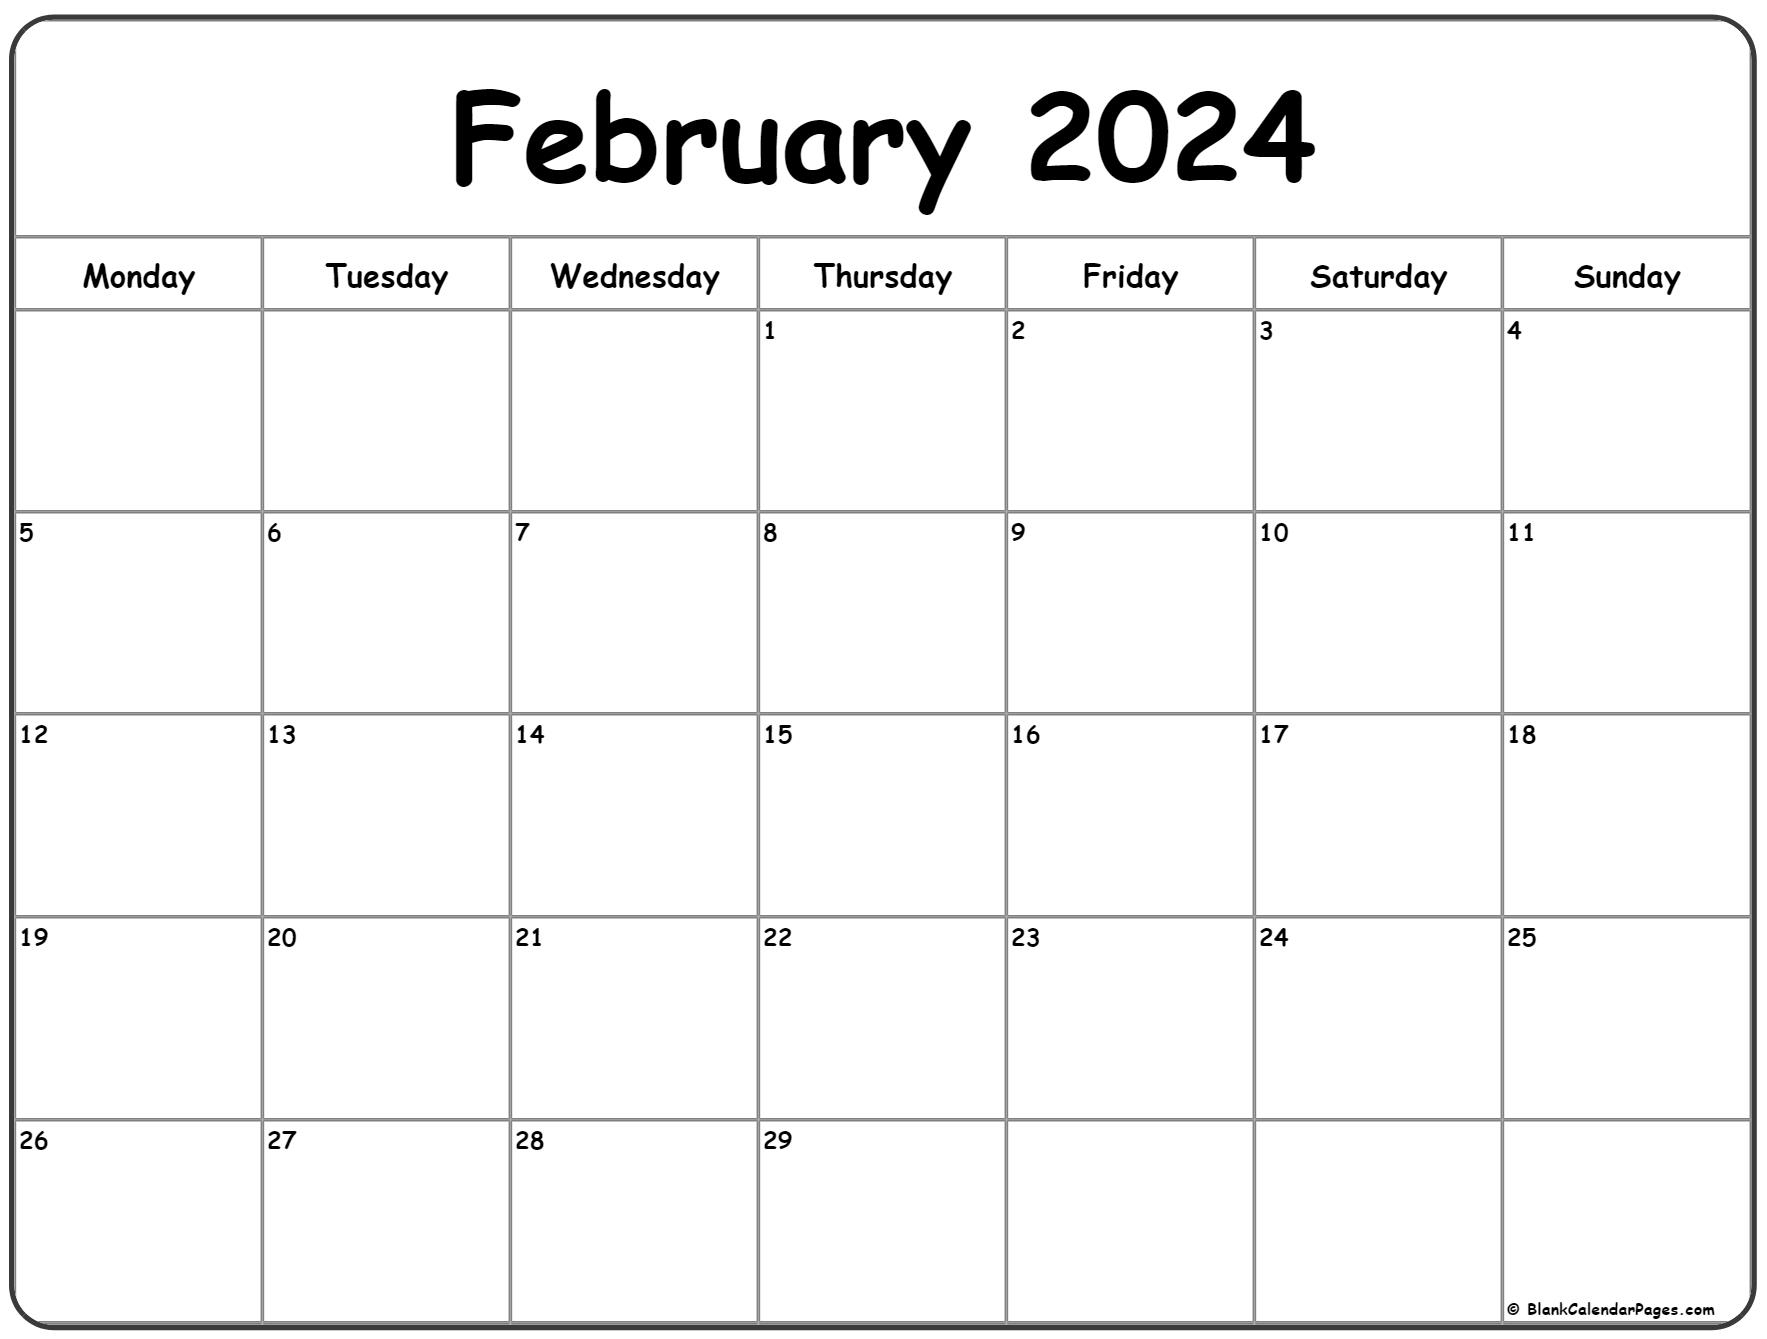 February 2024 Monday Calendar | Monday To Sunday for 2024 Printable Calendar February